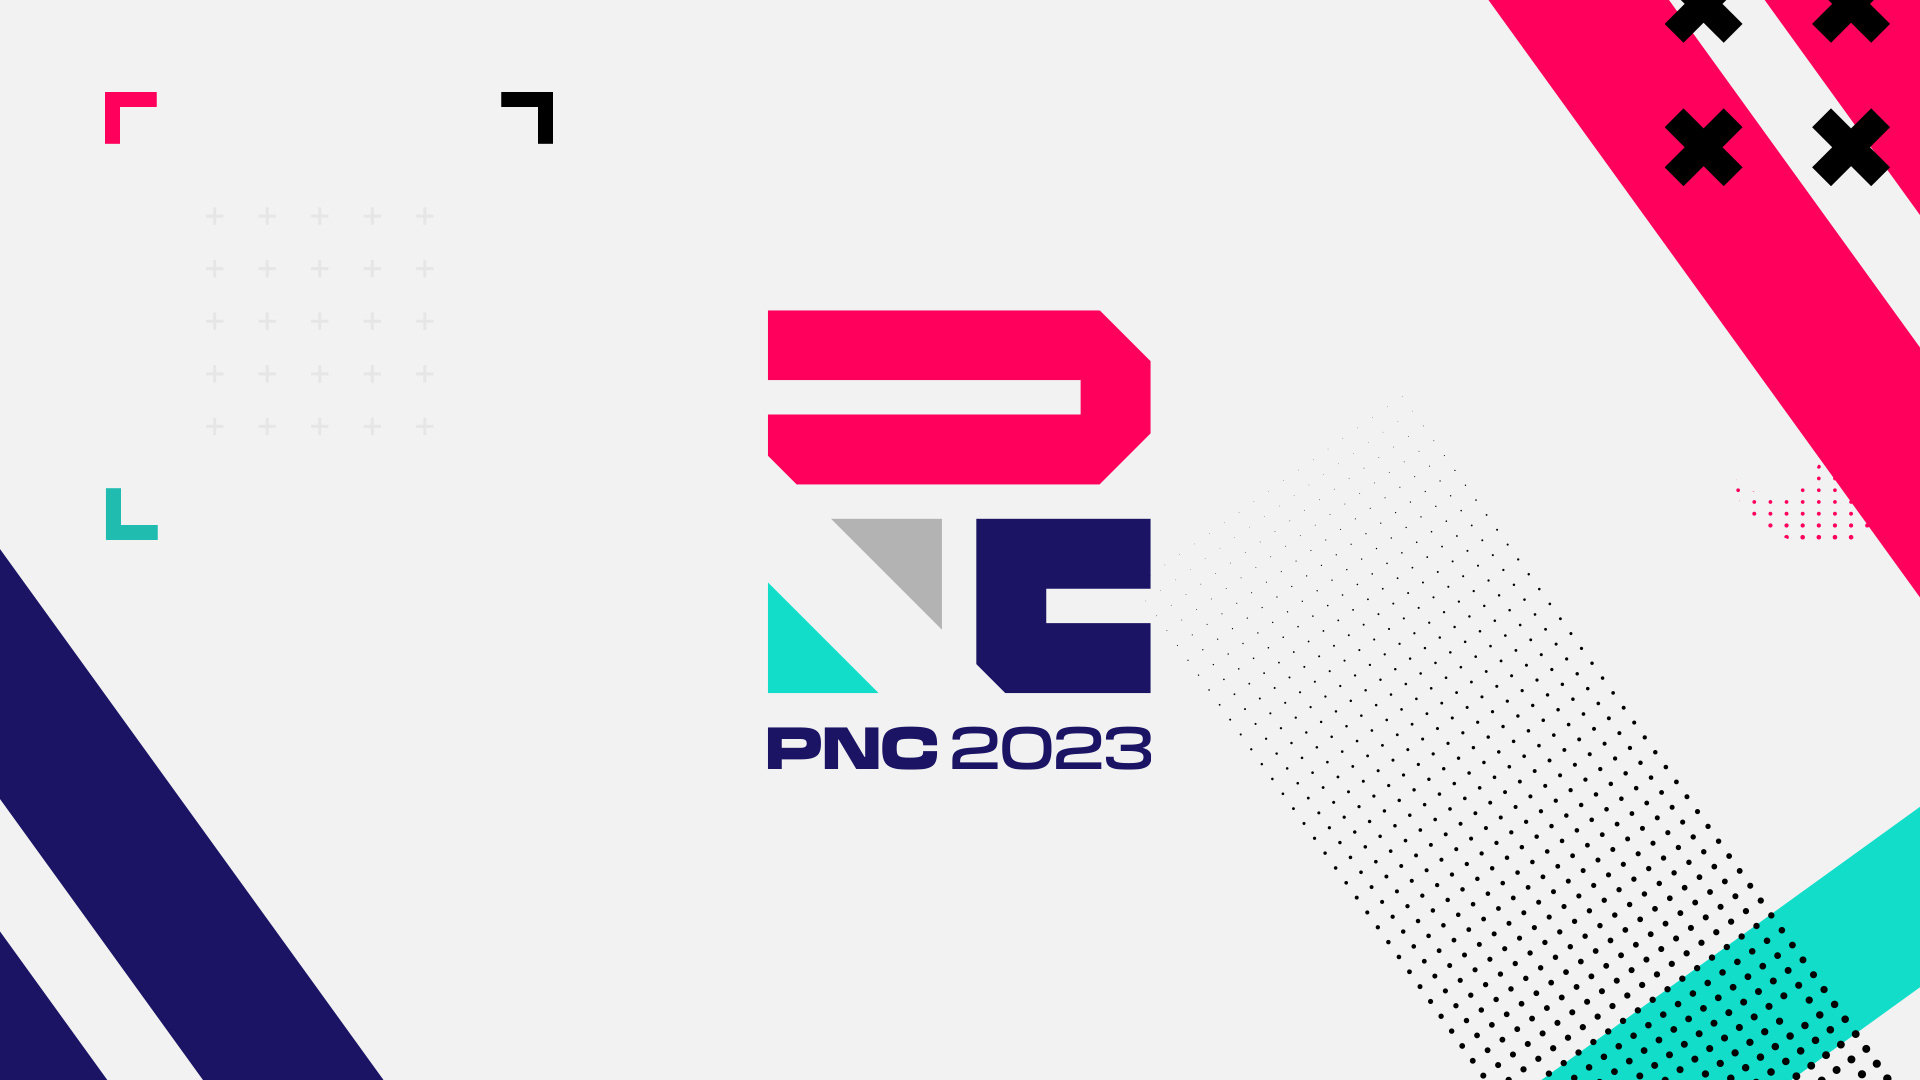 PNC全明星赛将于首尔举办 提供30W基础奖金和额外众筹奖金池